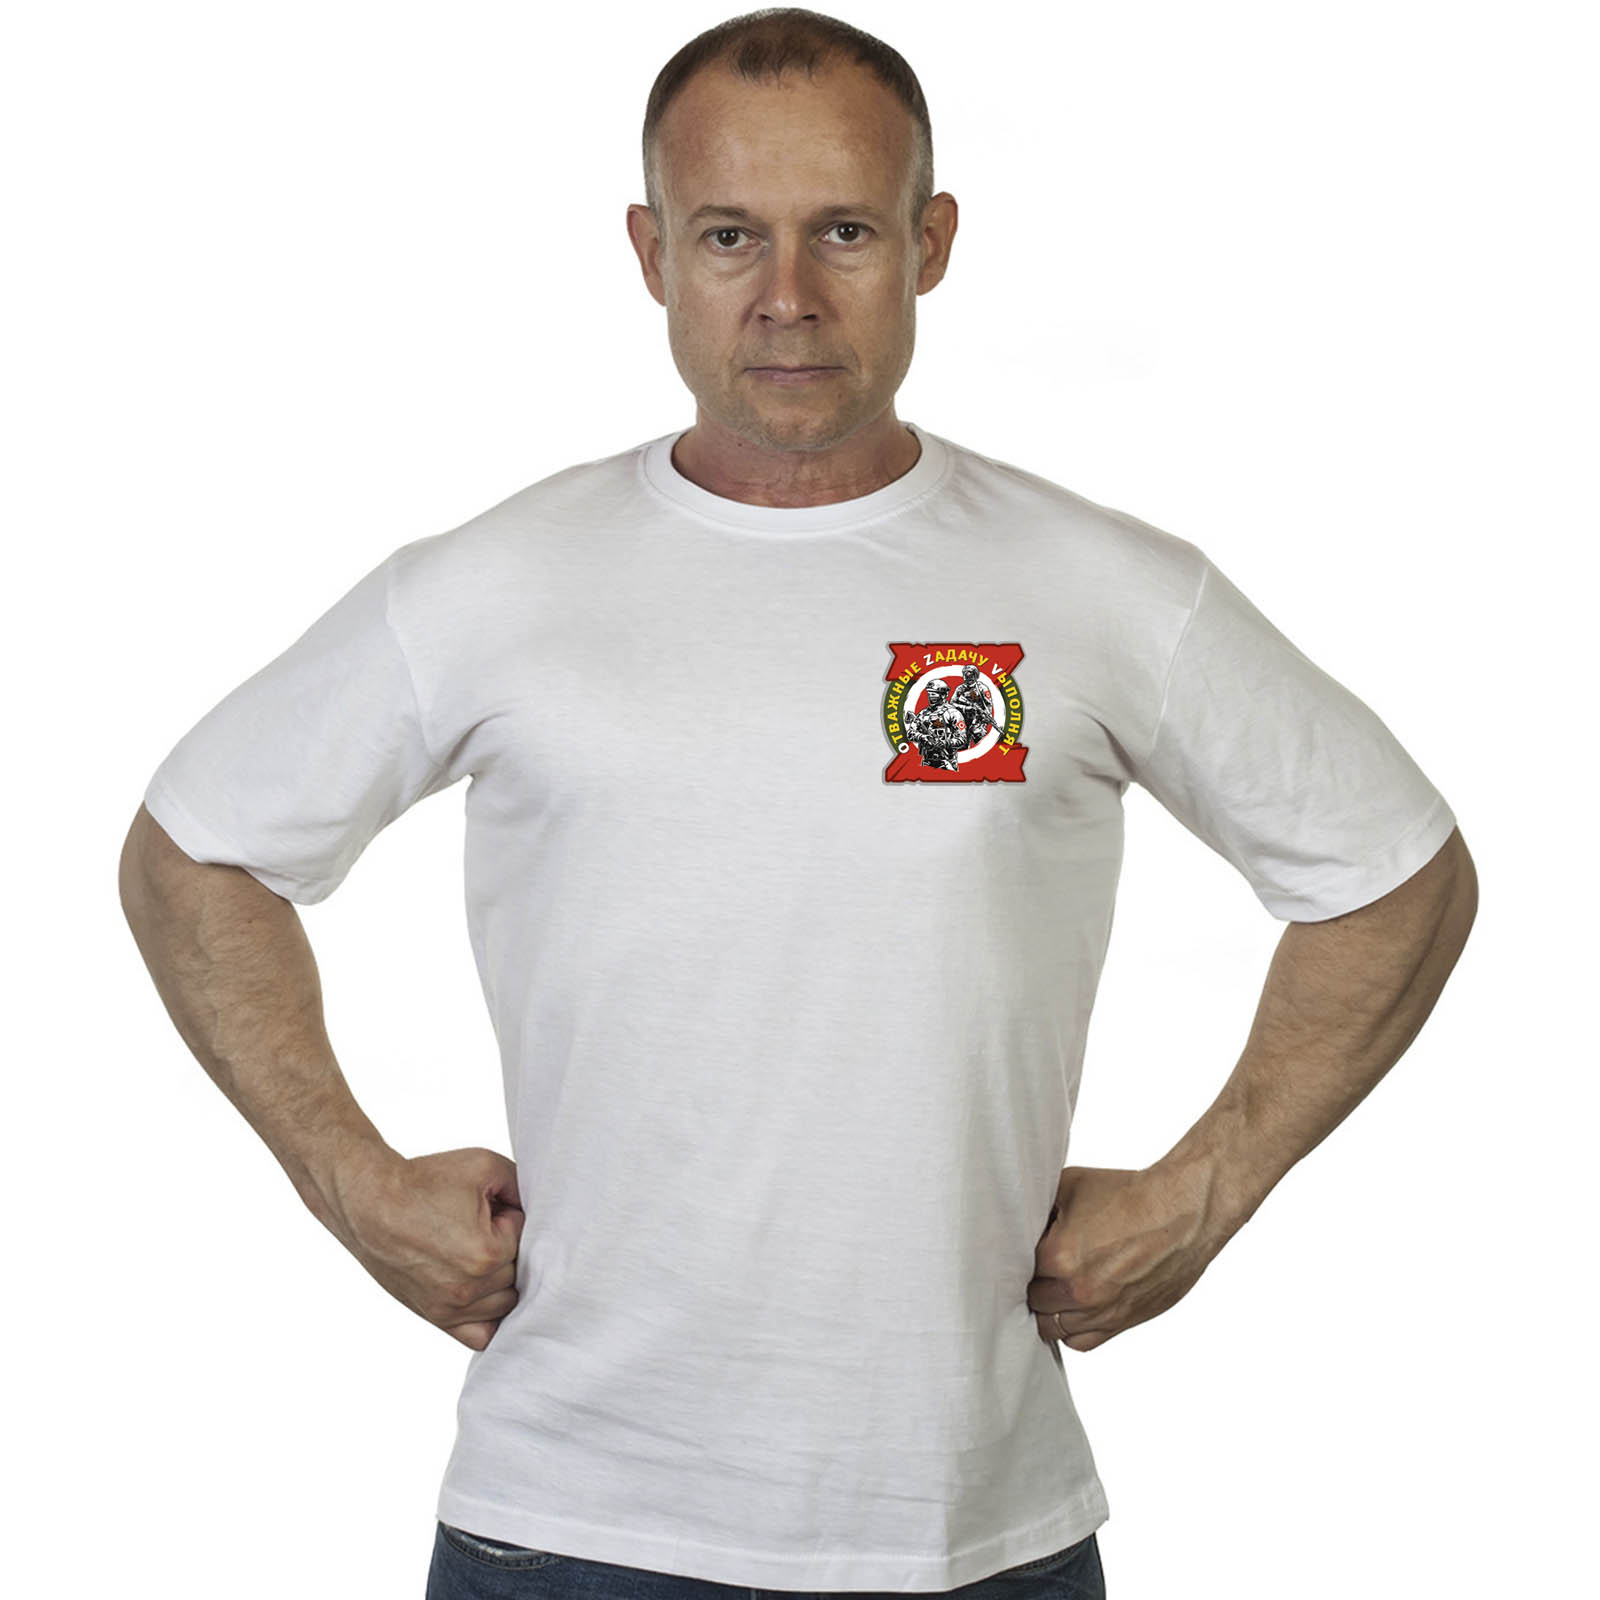 Белая футболка с термотрансфером "Отважные Zадачу Vыполнят"